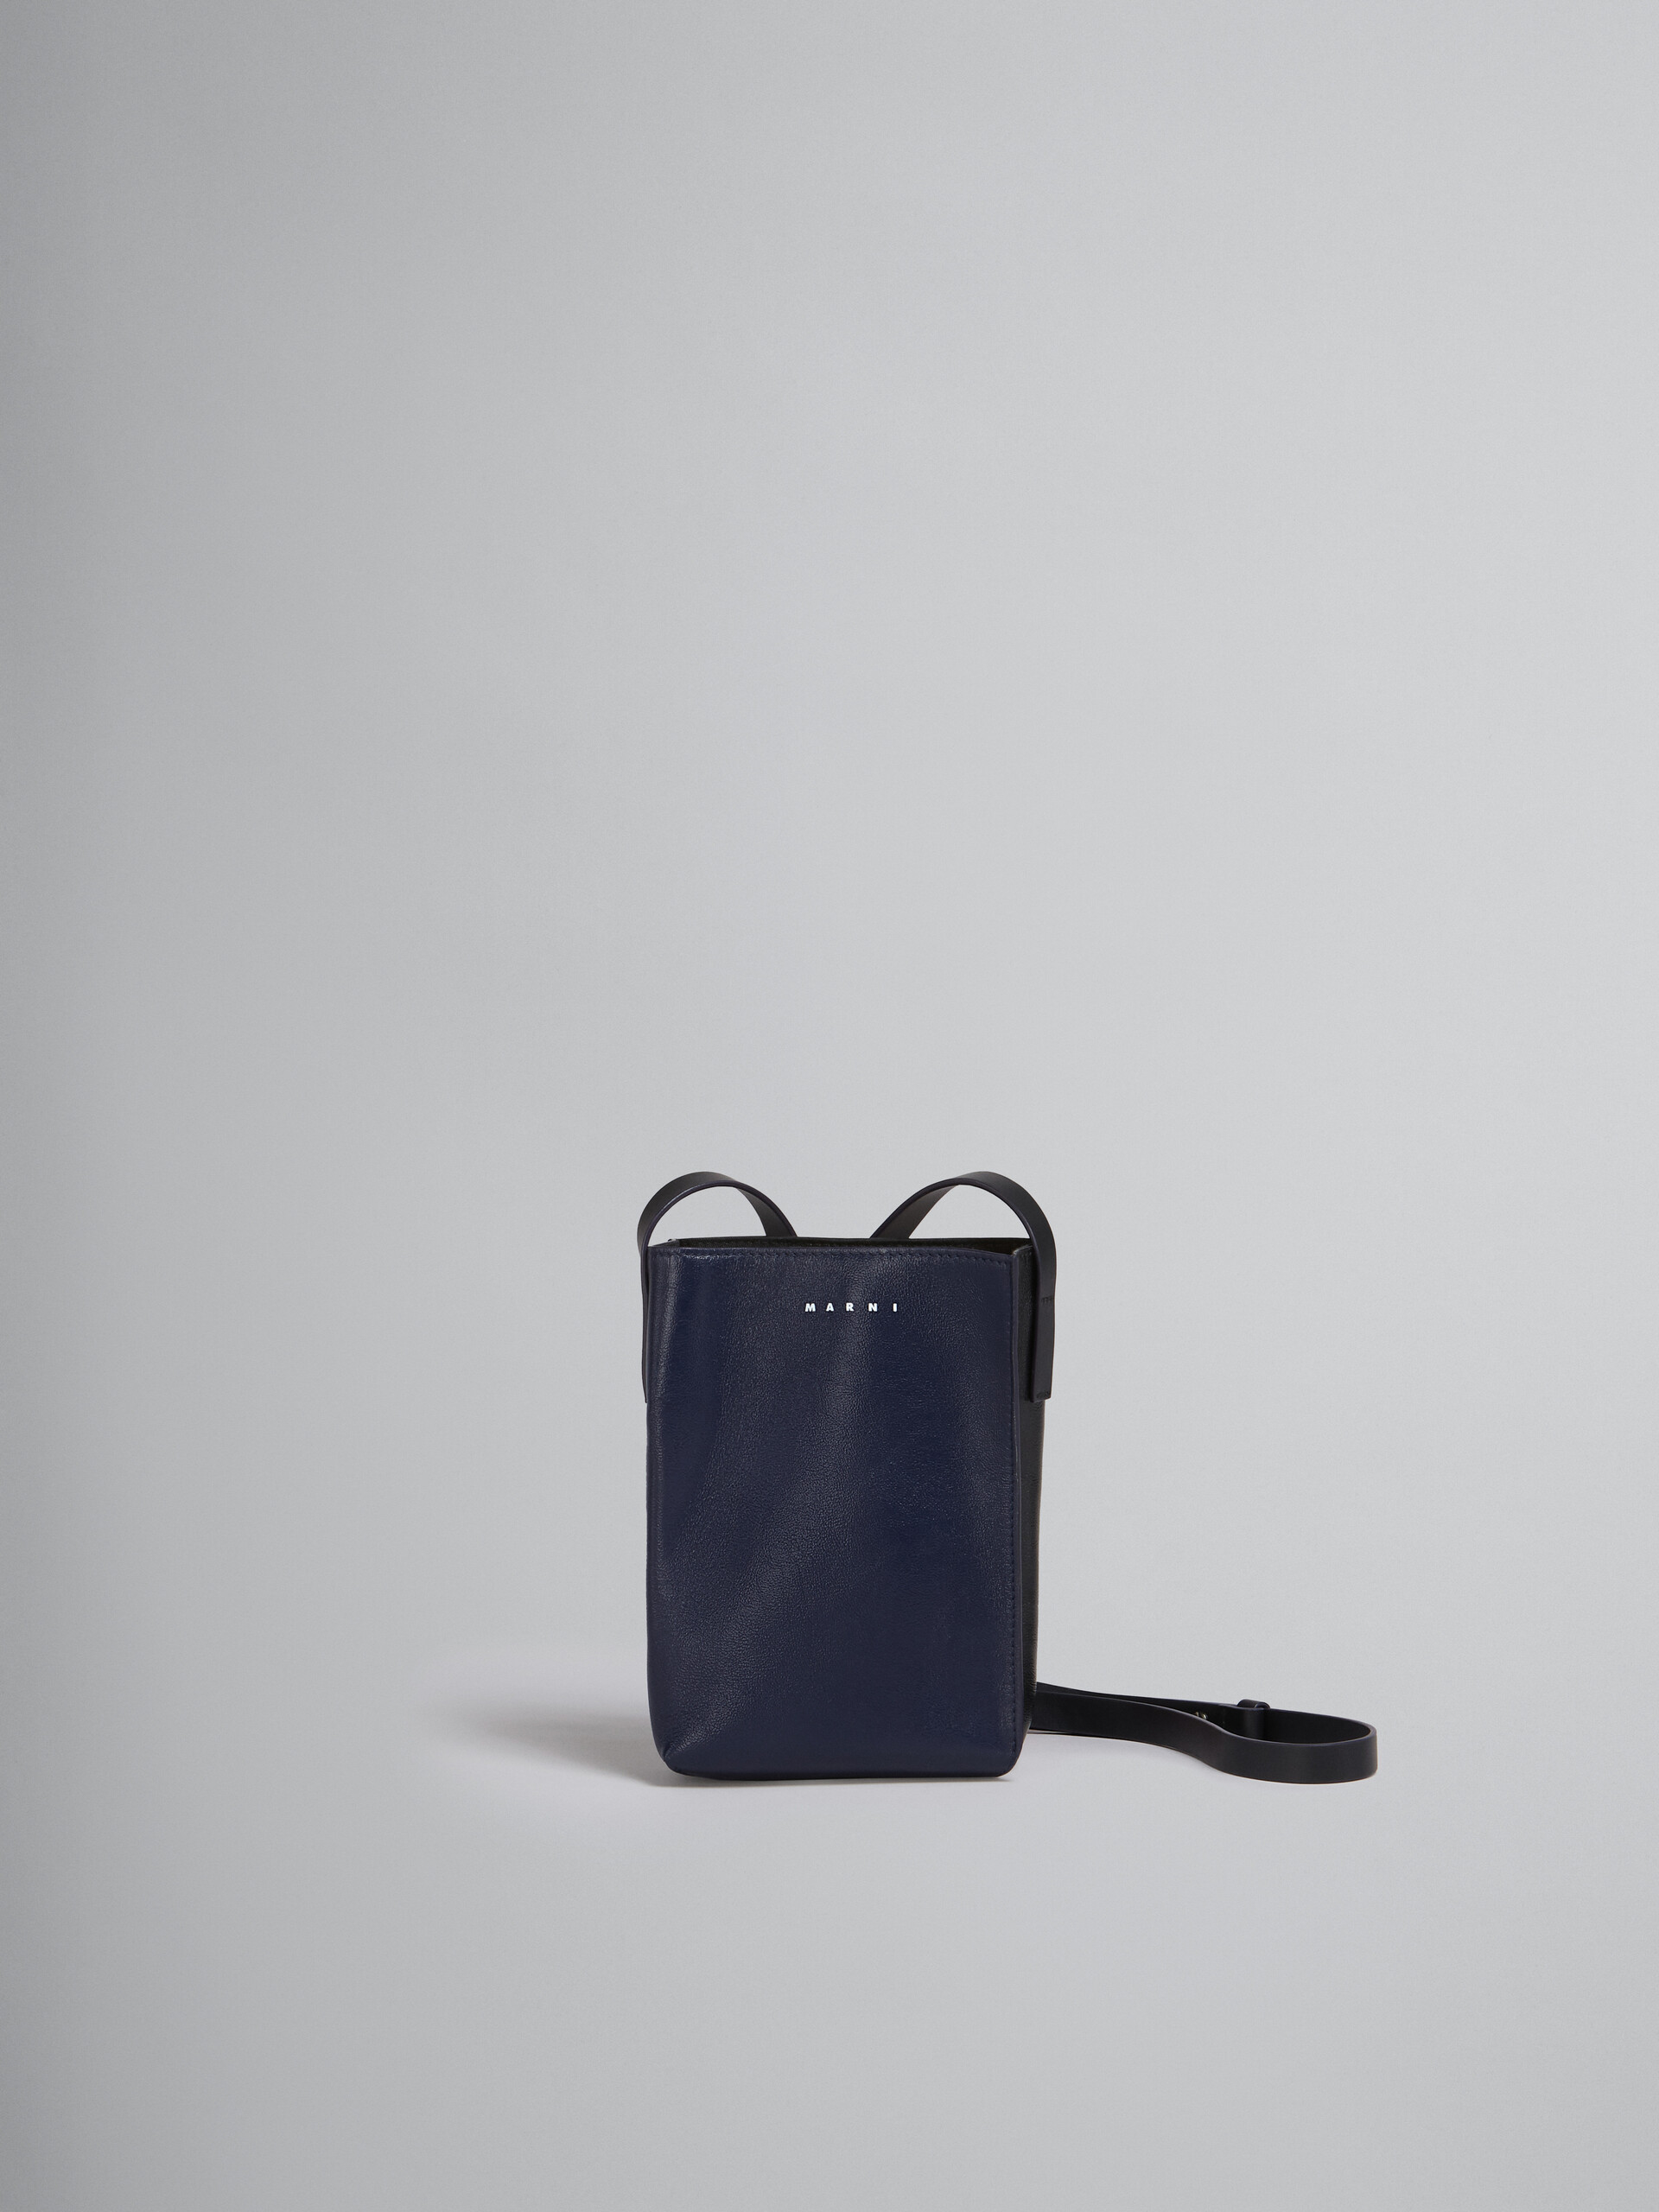 MUSEO SOFT bag piccola in pelle lucida blu e nera - Borse a spalla - Image 1